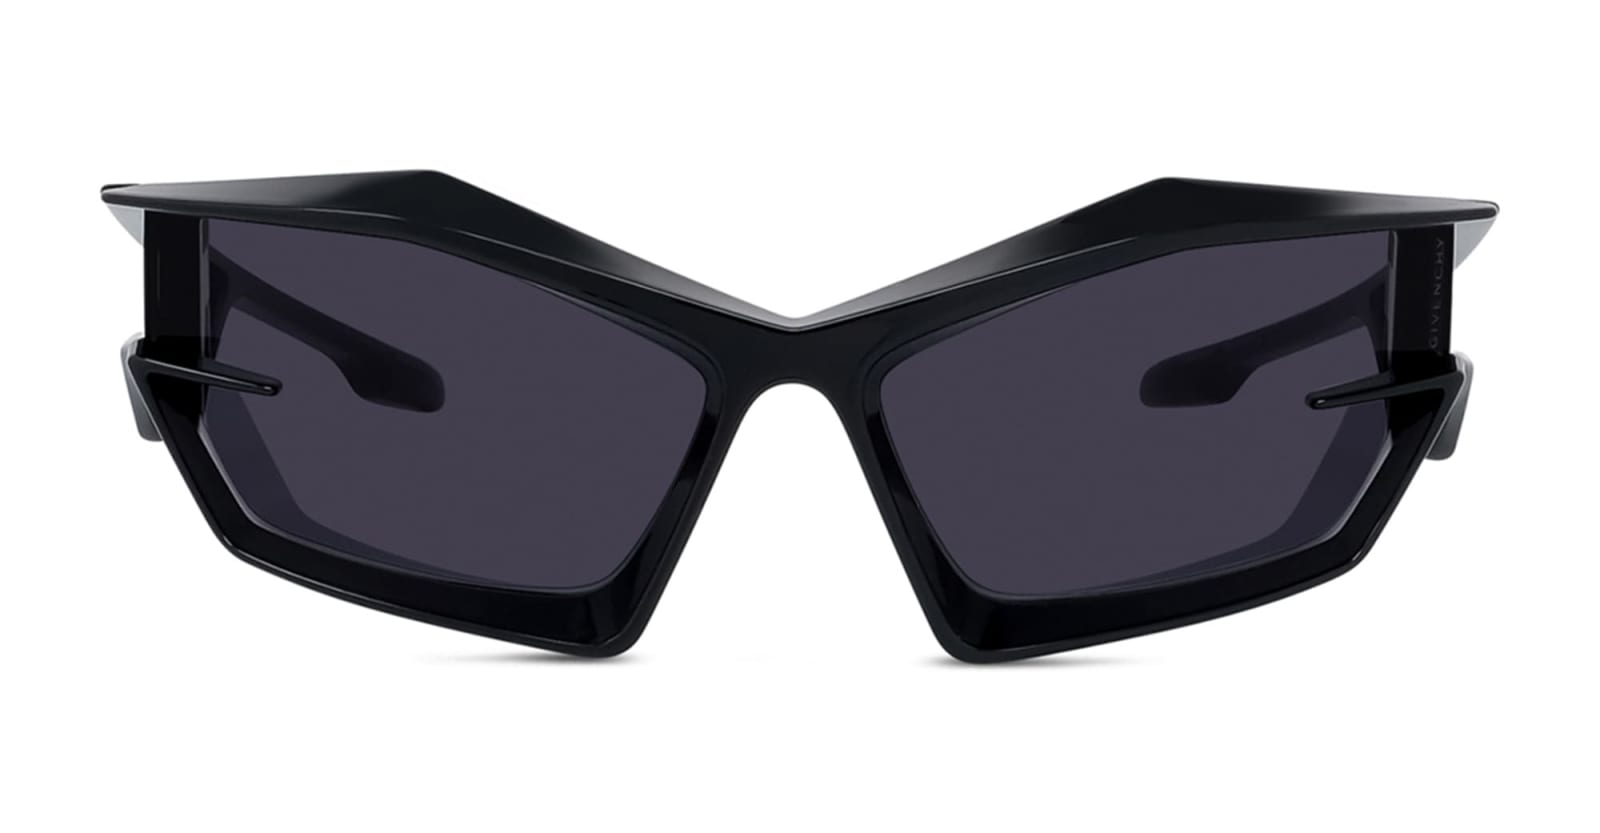 Giv Cut - Shiny Black Sunglasses